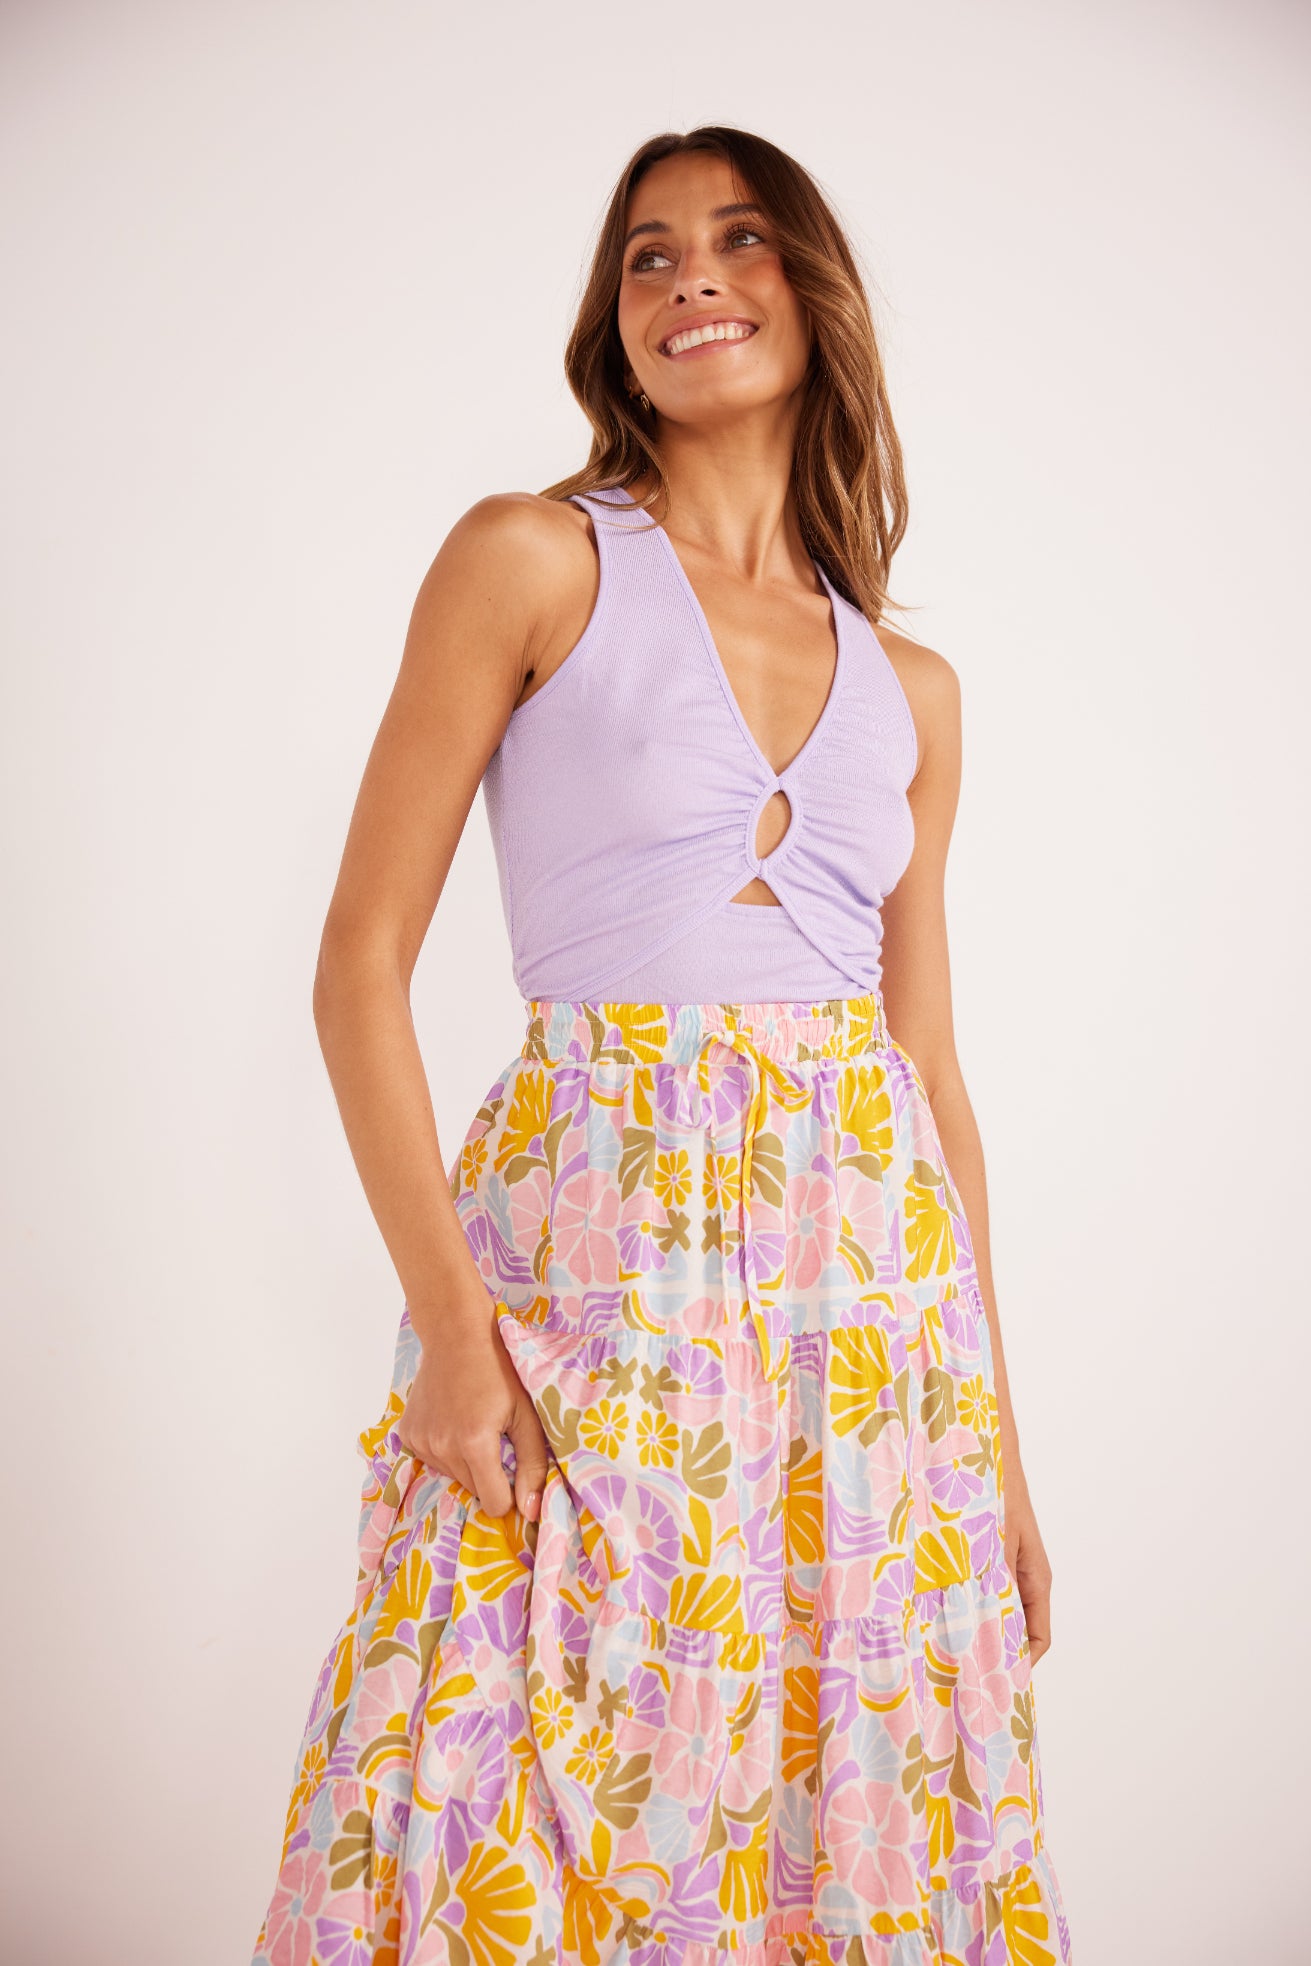 Mink Pink Soleil Tiered Flowy Midi Skirt Retro Floral